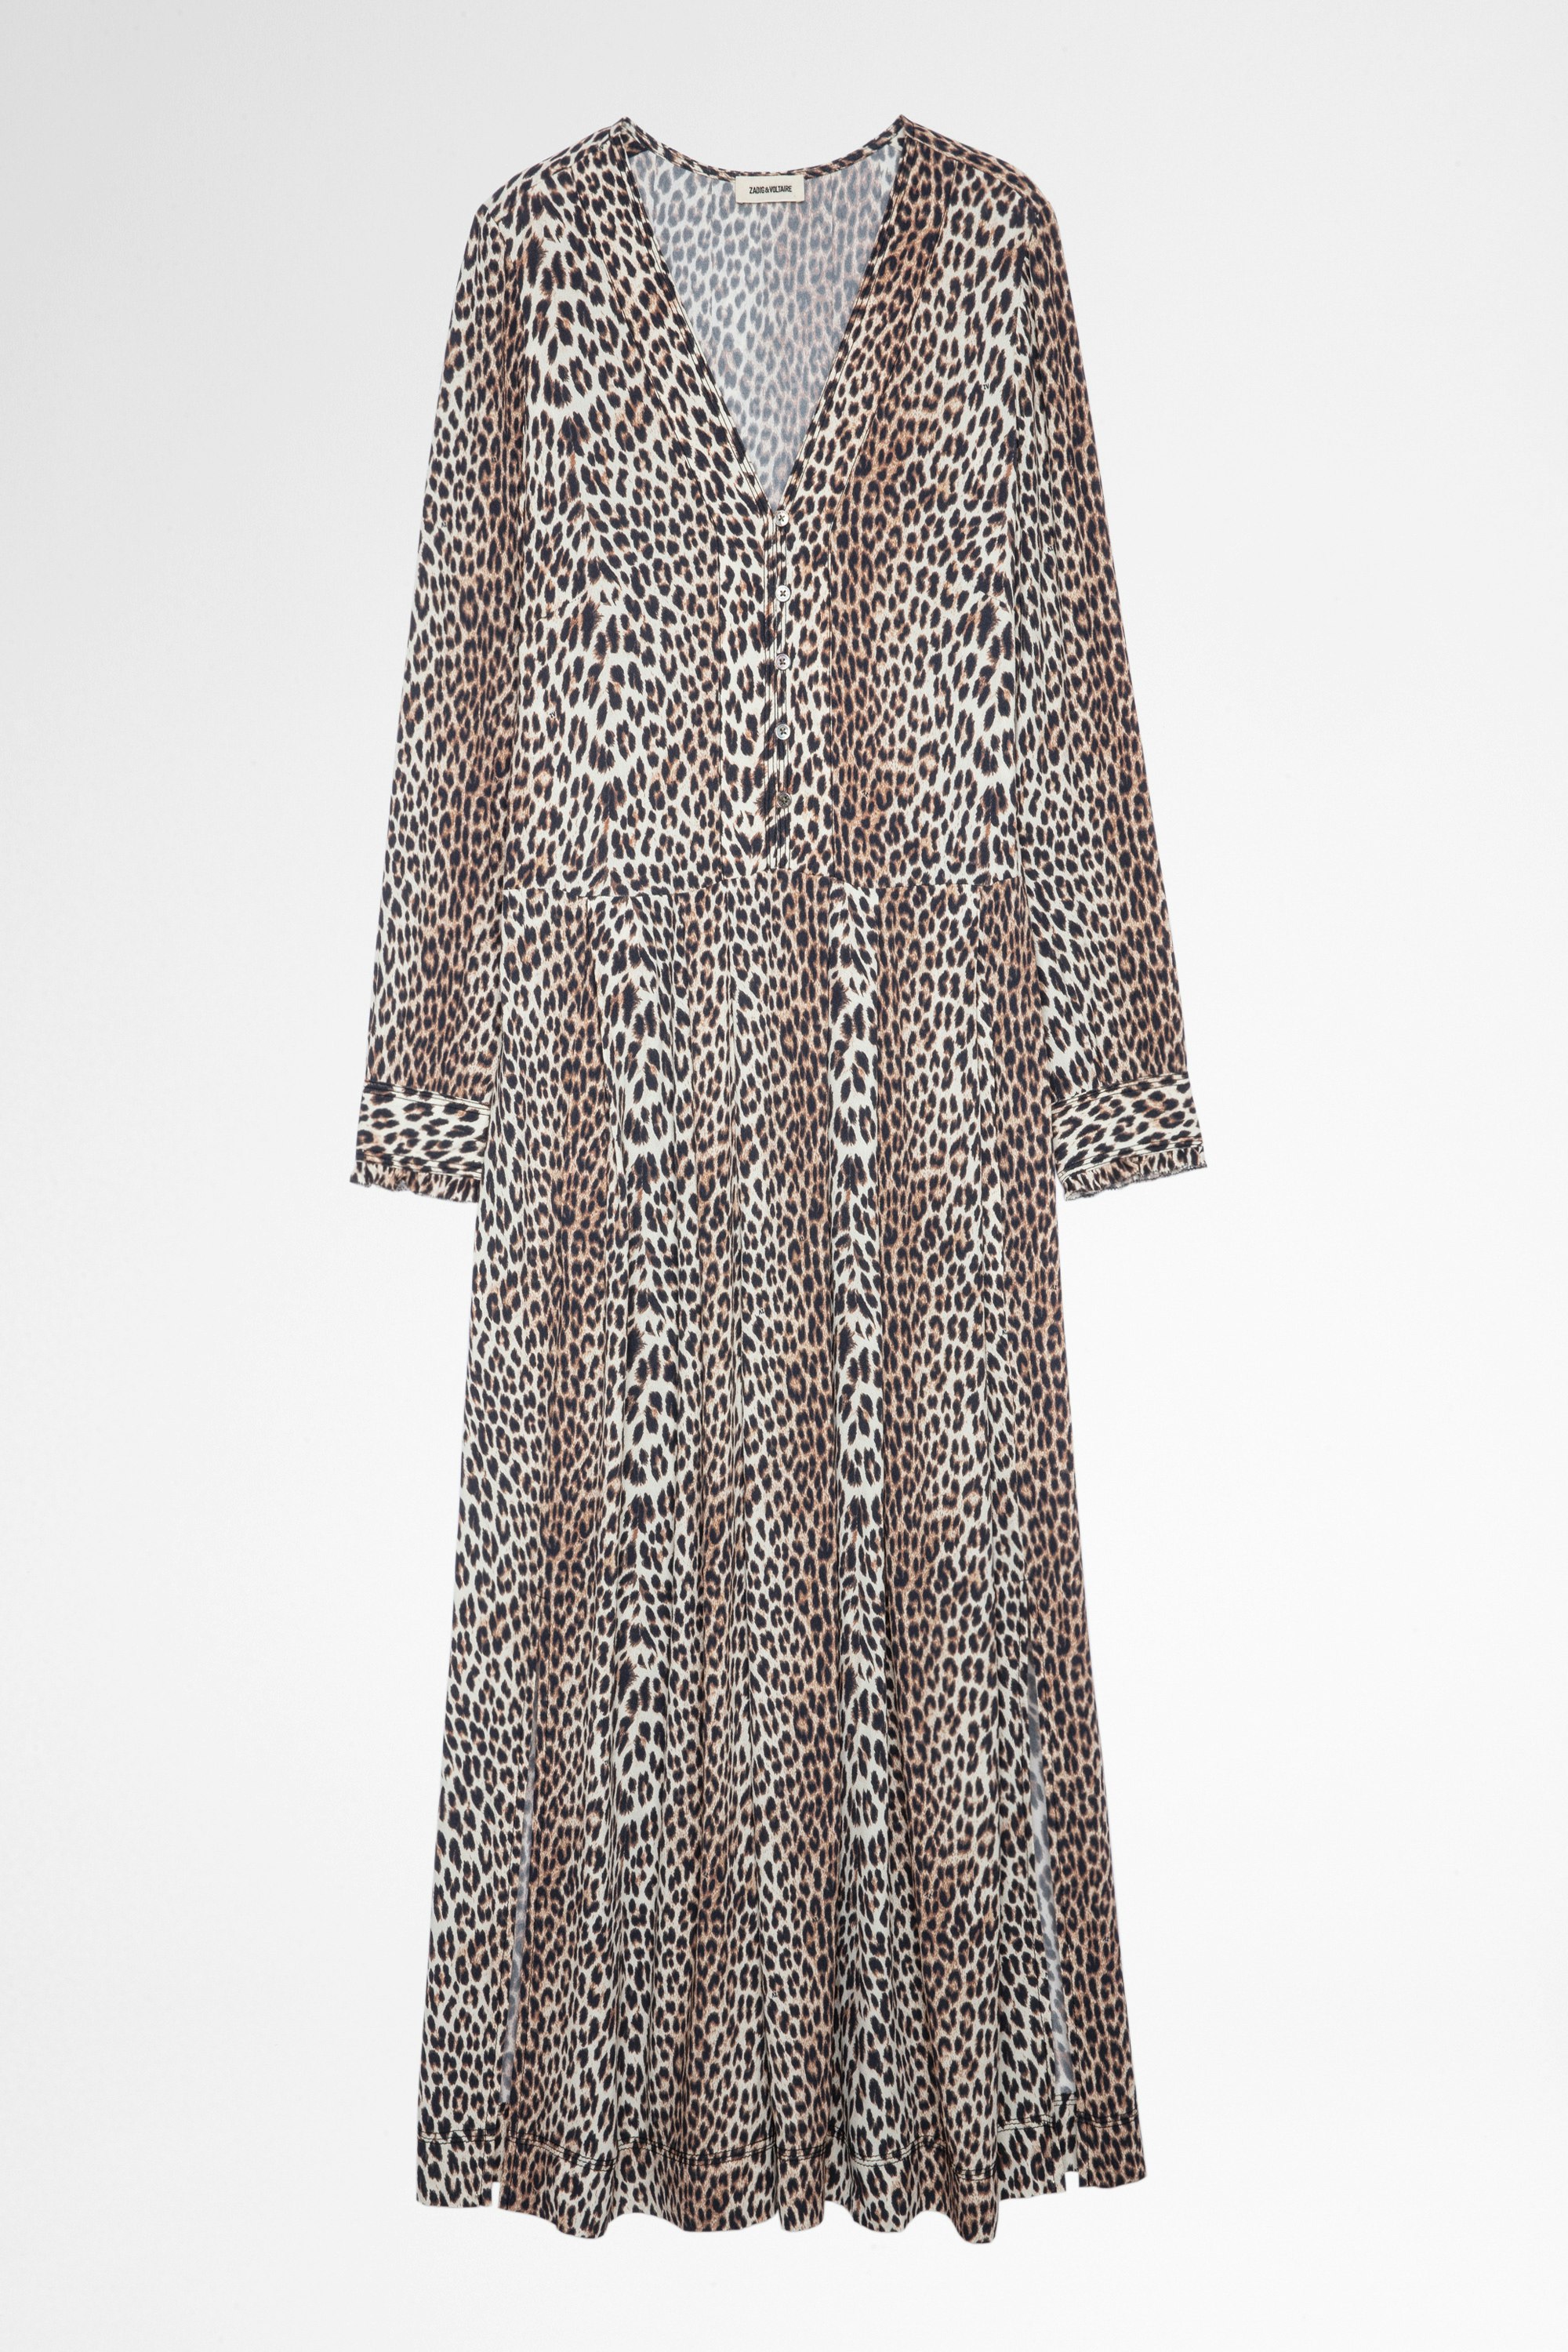 Roux ドレス Women’s long dress in leopard print